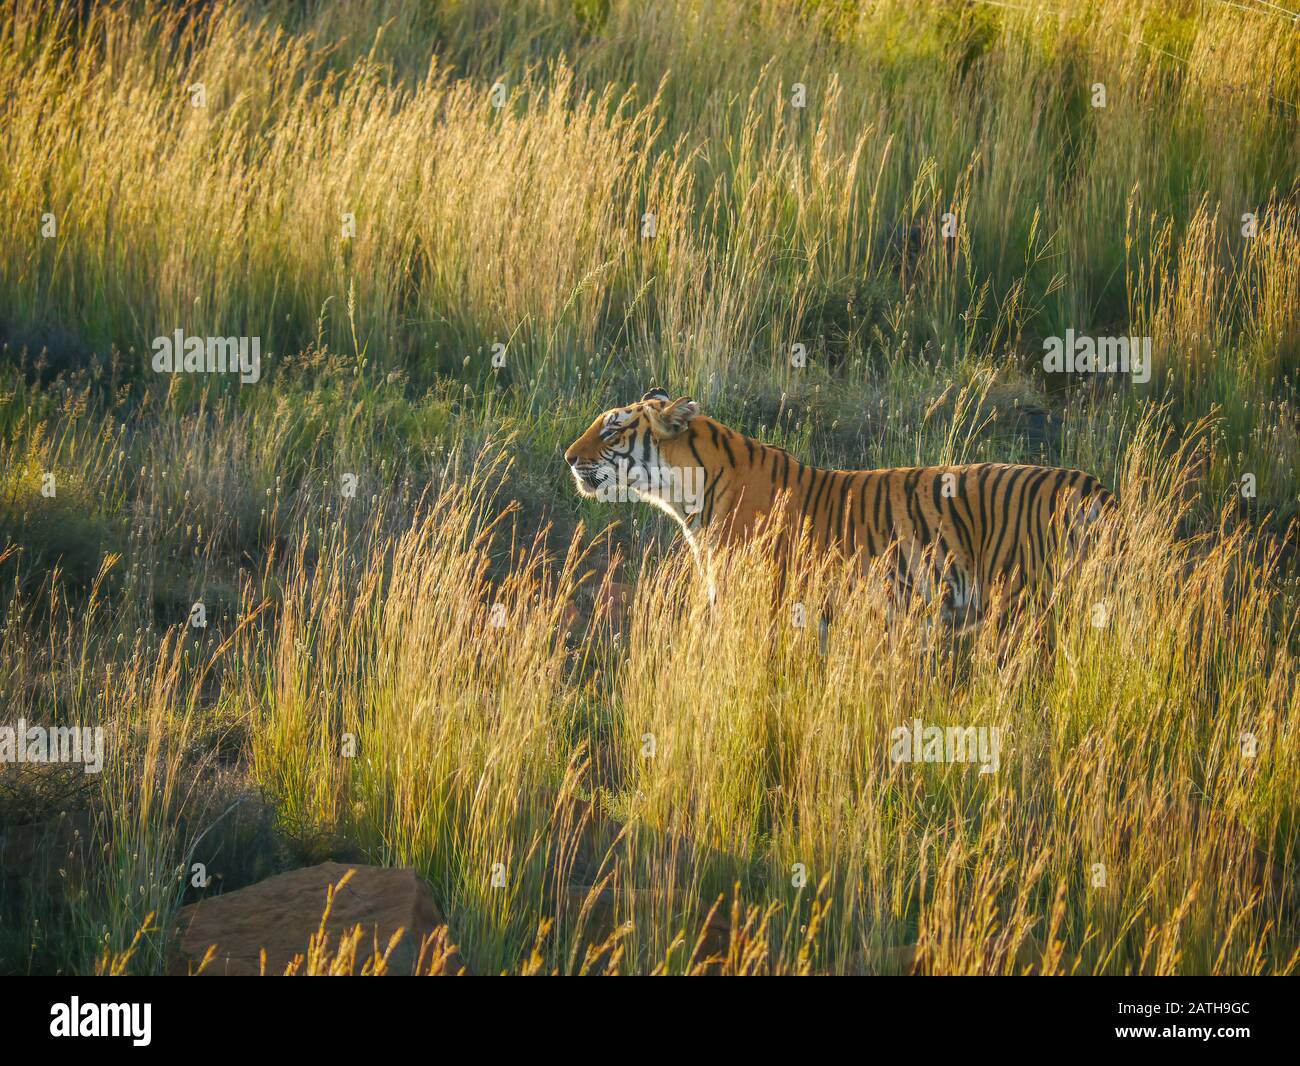 Ein ausgewachsener Bengal-Tiger (Panthera tigris) riecht den Duft seiner Beute, während er von langem Gras und goldenem Licht getarnt wird. Stockfoto